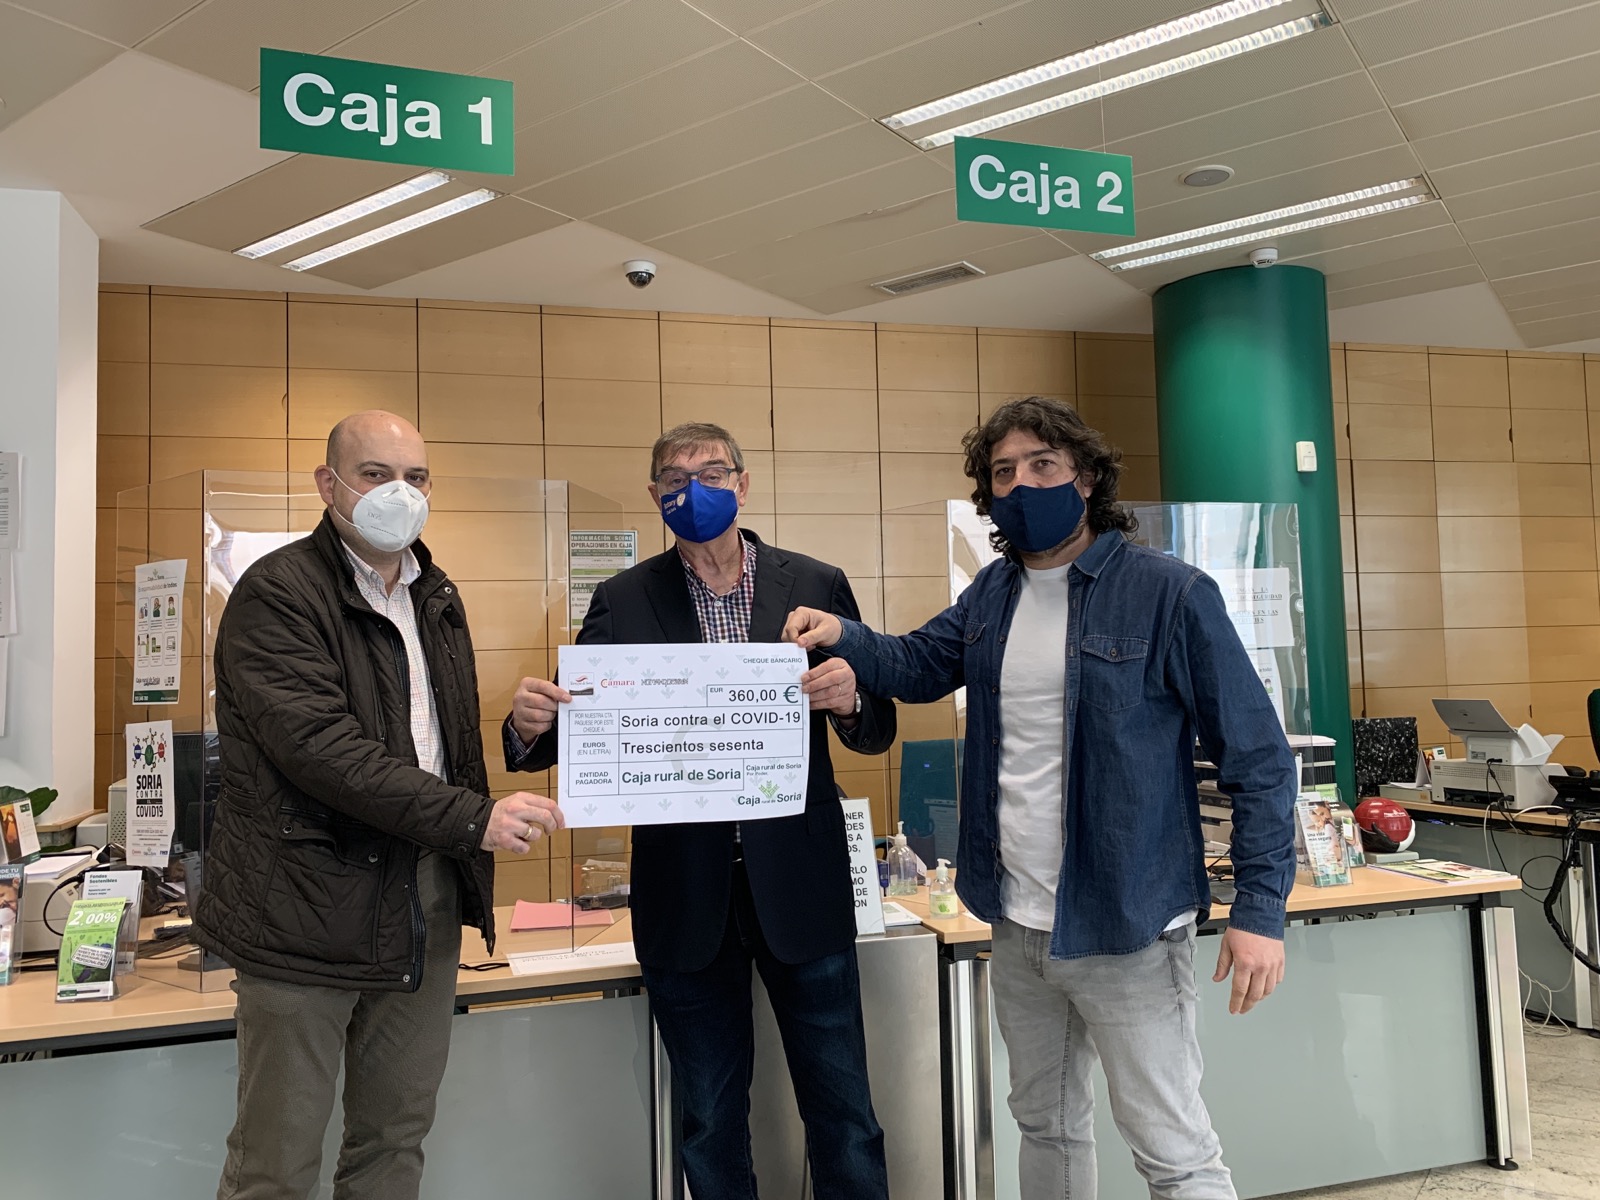 La Cámara y la Asociación de Fabricantes entregan los primeros 360 euros recaudados con el delantal de Torrezno de Soria, un gesto solidario para luchar contra el COVID